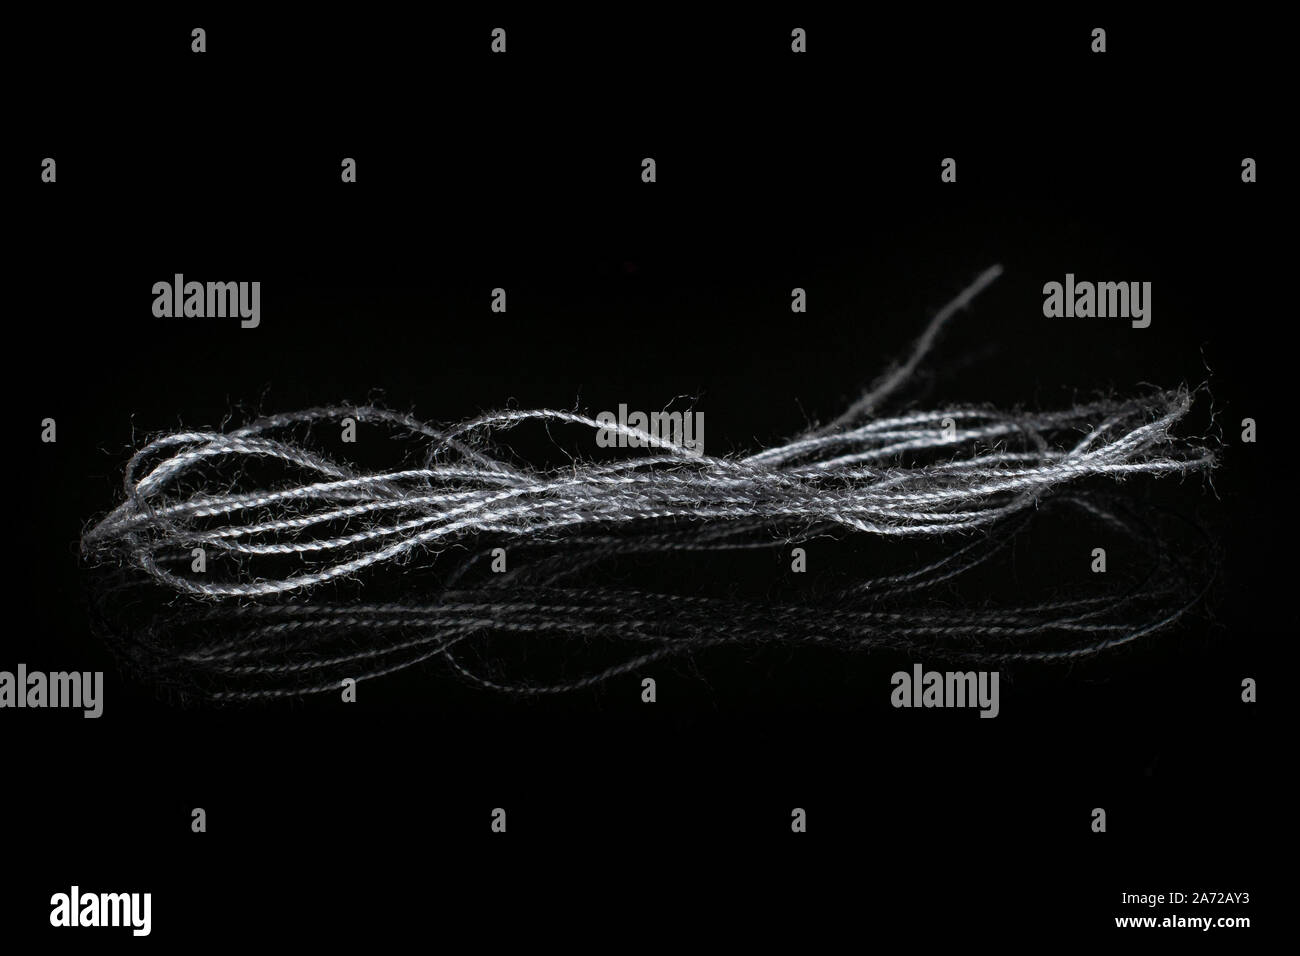 One whole haberdashery item grey thread isolated on black glass Stock Photo